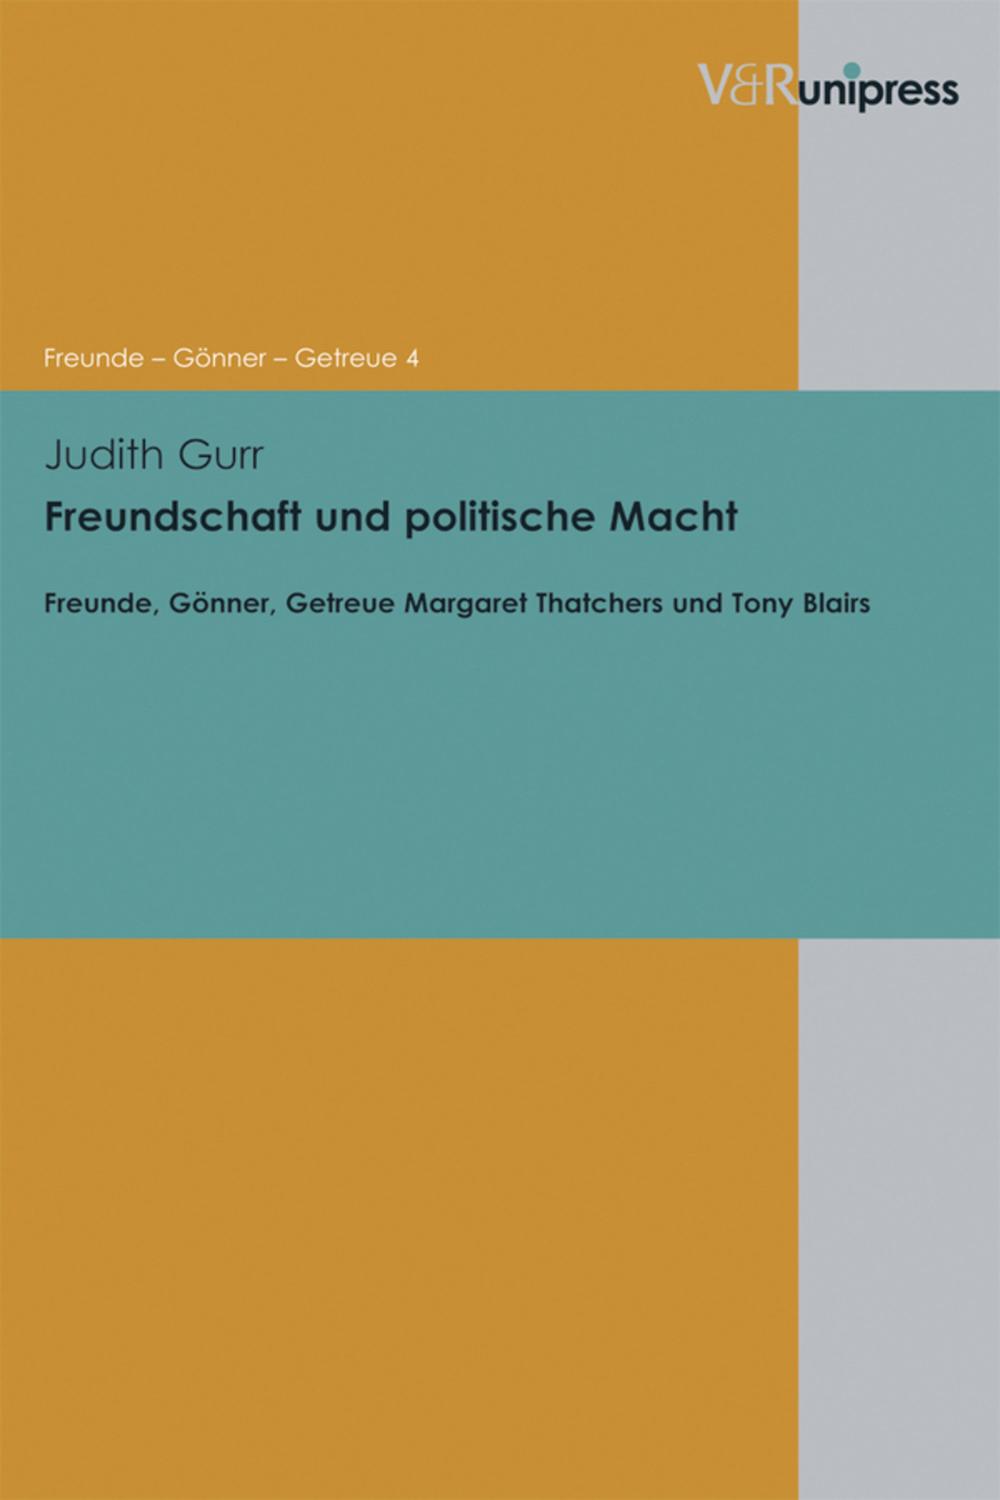 Freundschaft und politische Macht - Judith Gurr